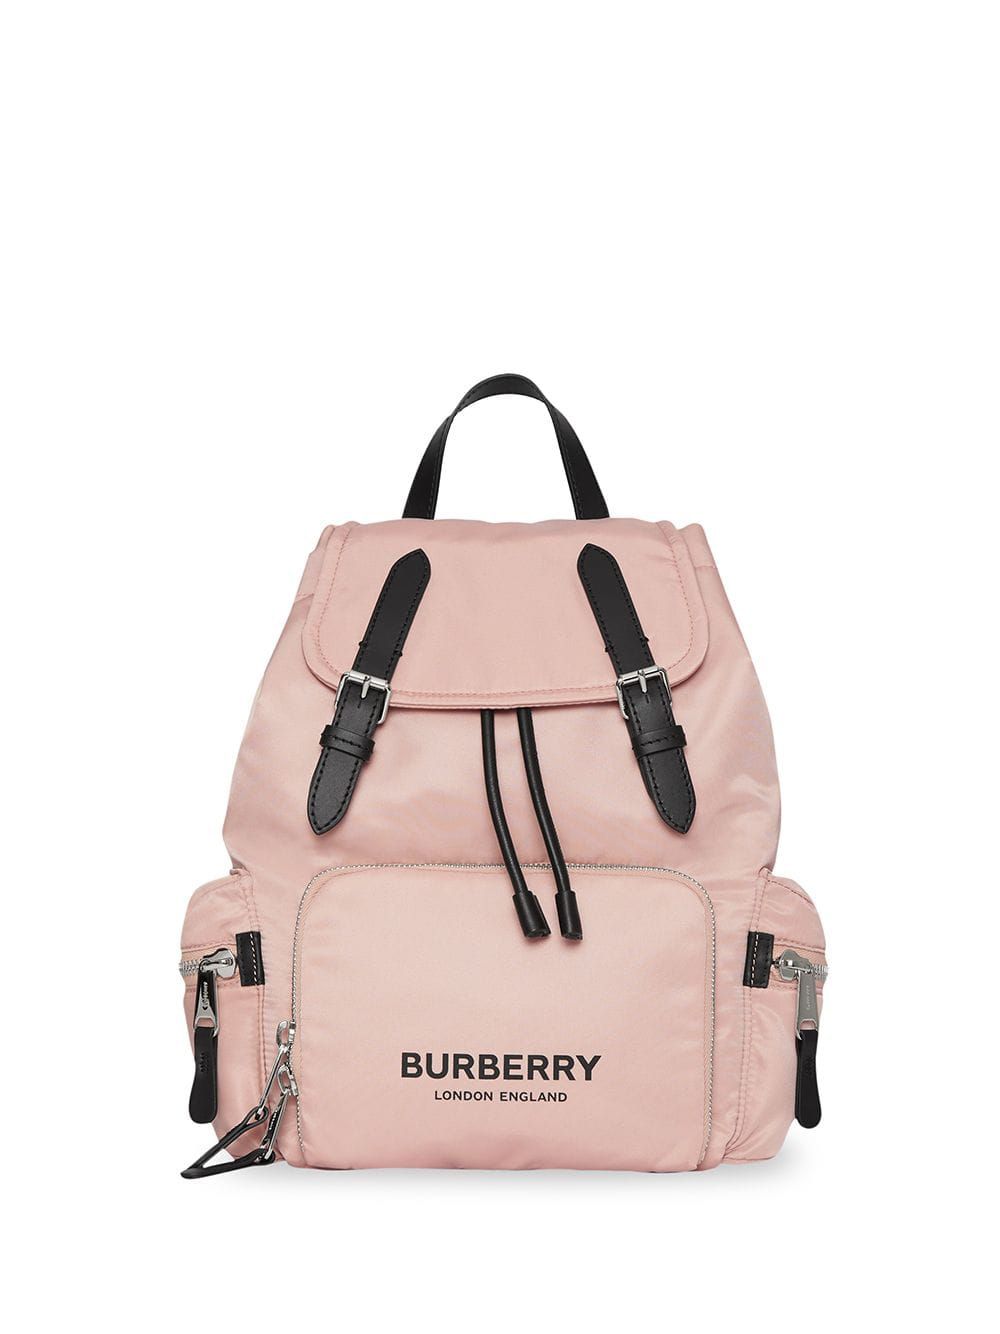 фото Burberry рюкзак среднего размера